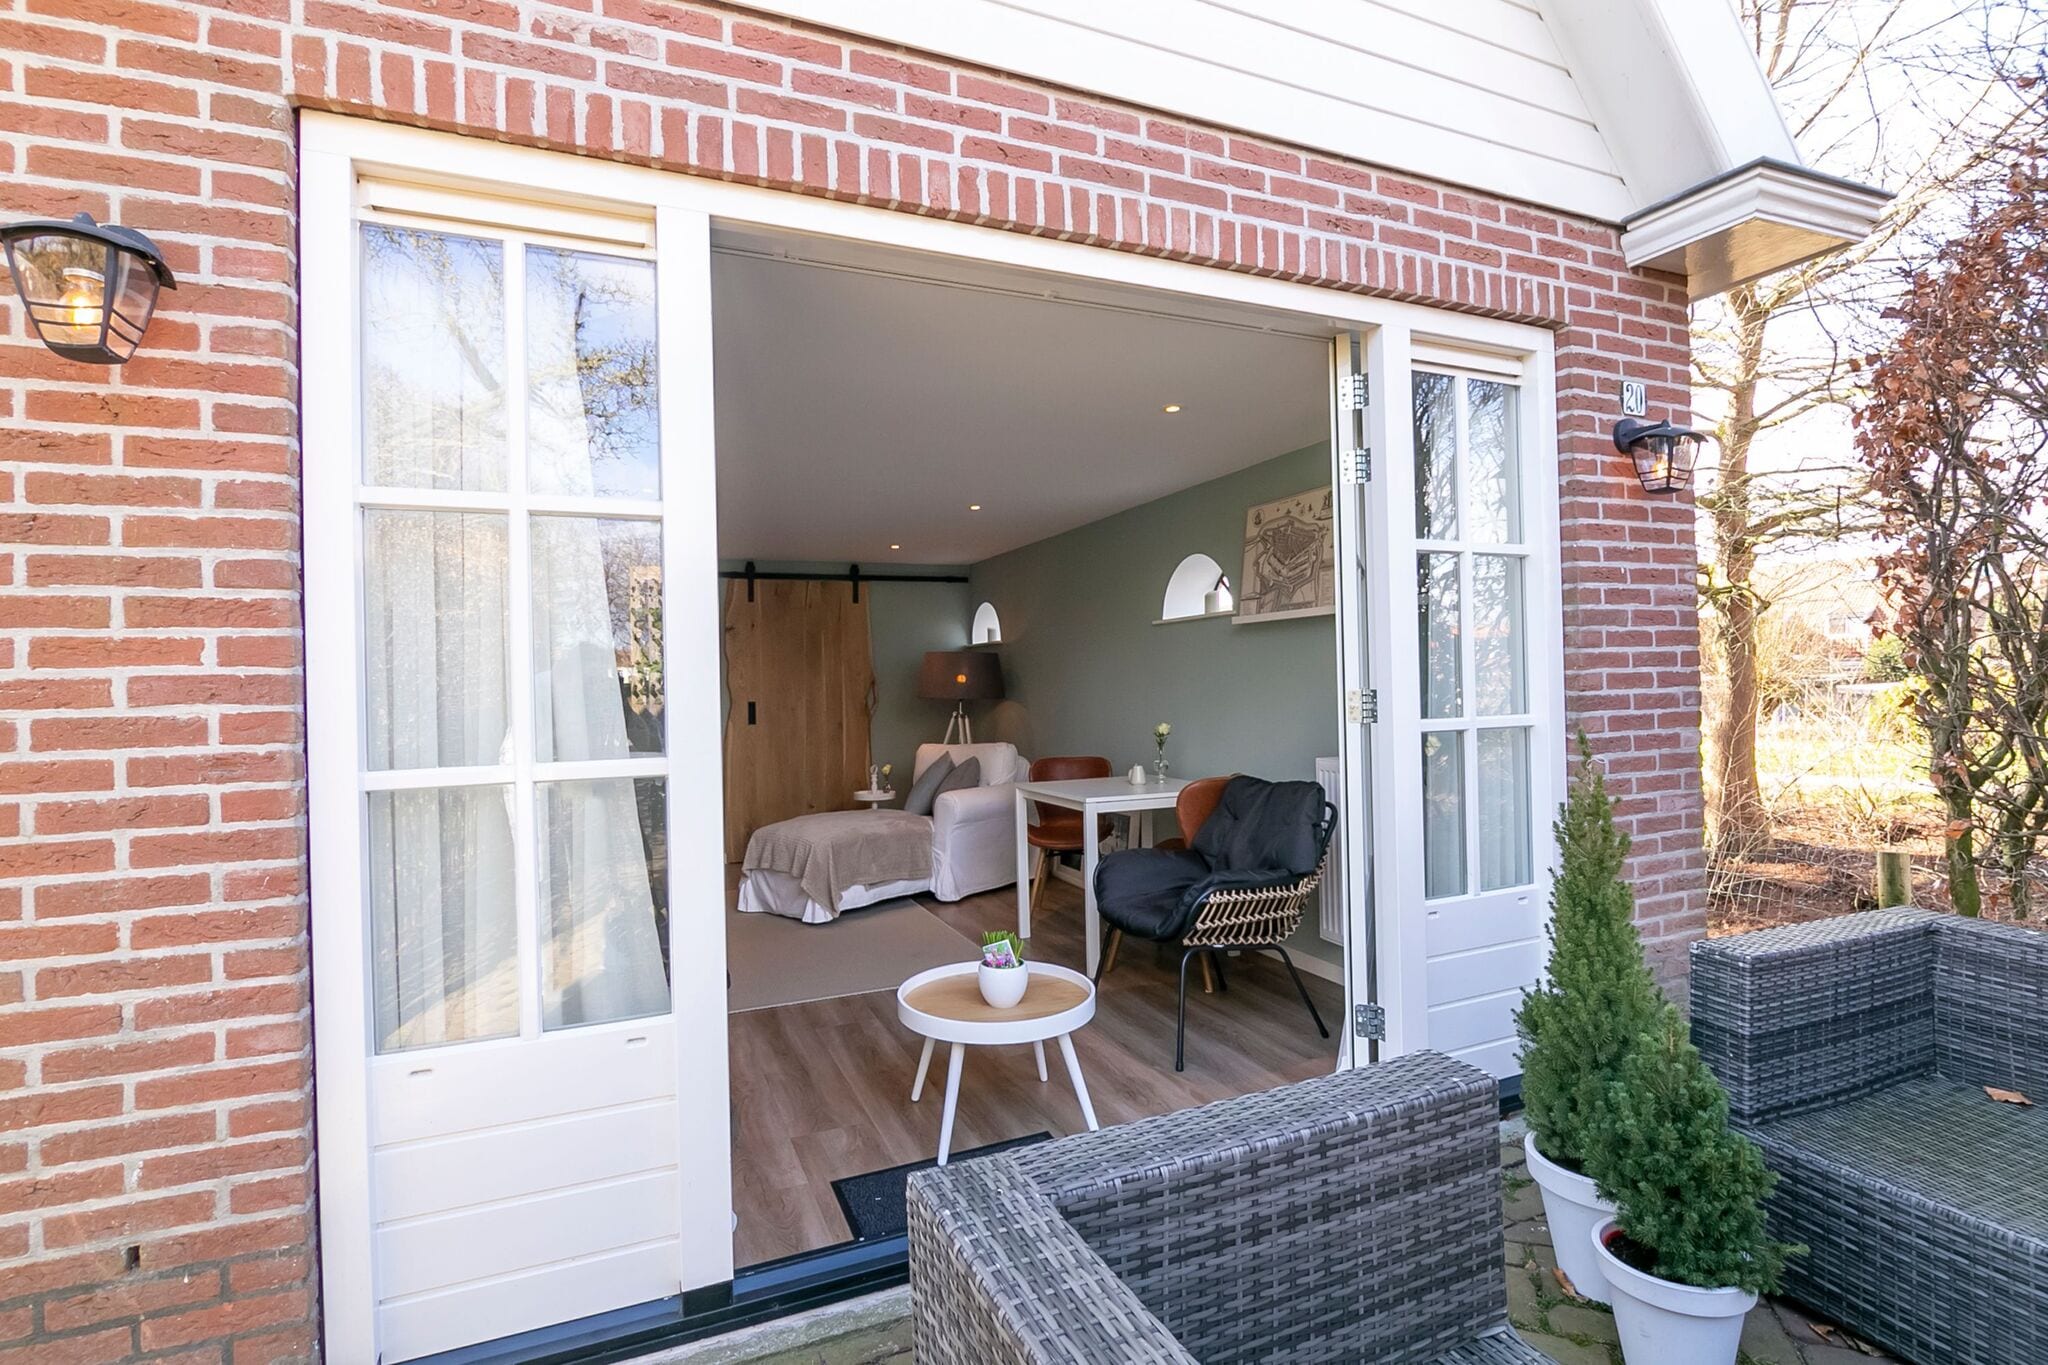 Maison de vacances cosy avec terrasse à Medemblik en Hollande du Nord